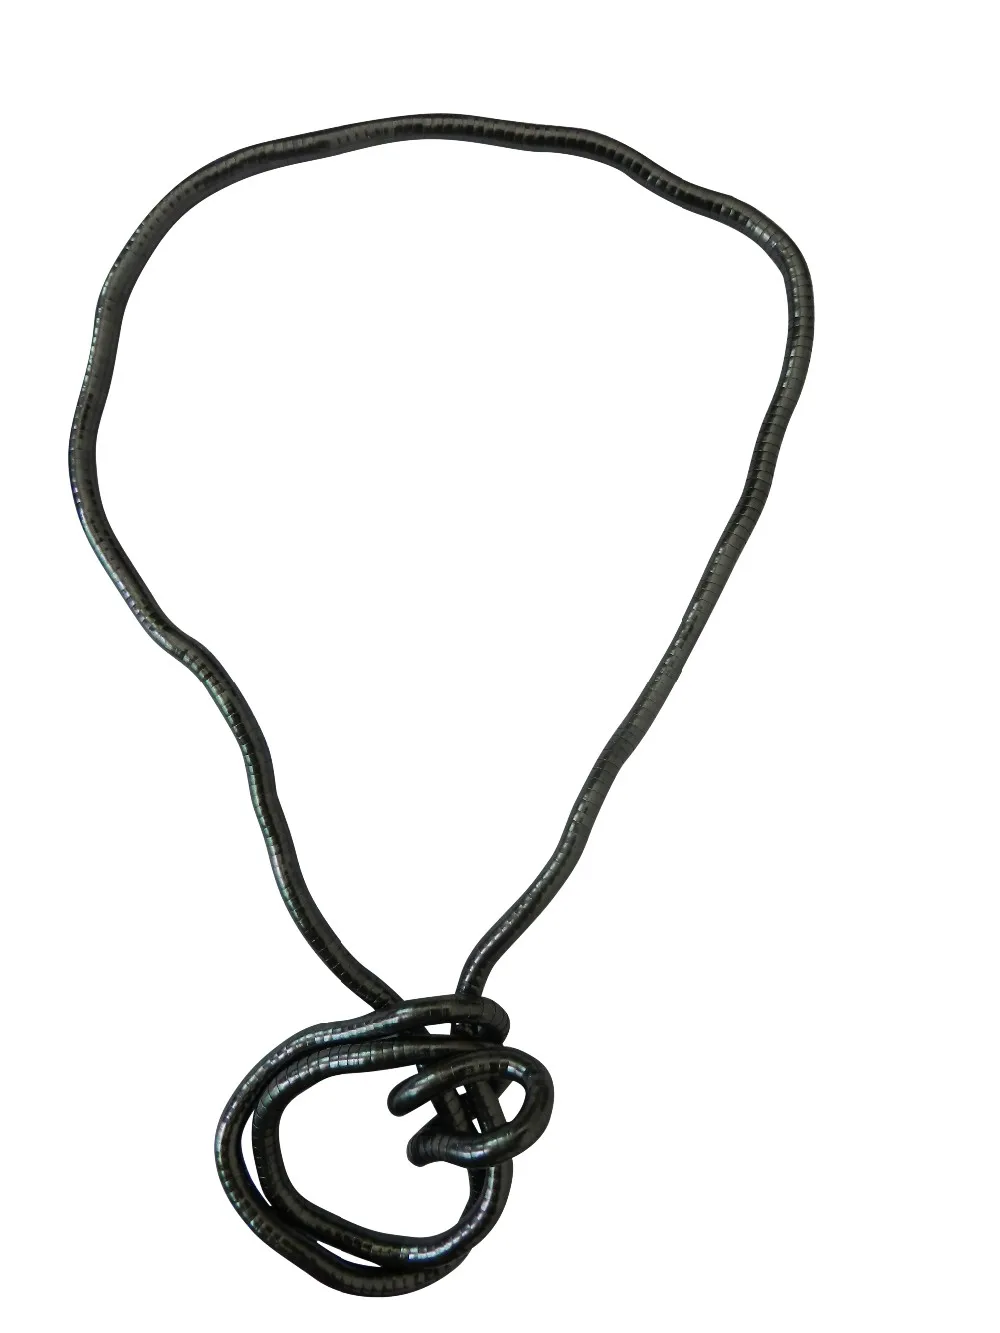 YUZHEJIE Новинка! Носить вам нравится носить витое ожерелье 900 мм длина Сгибаемая змея цепь Гибкая Твист ювелирные изделия ожерелье s